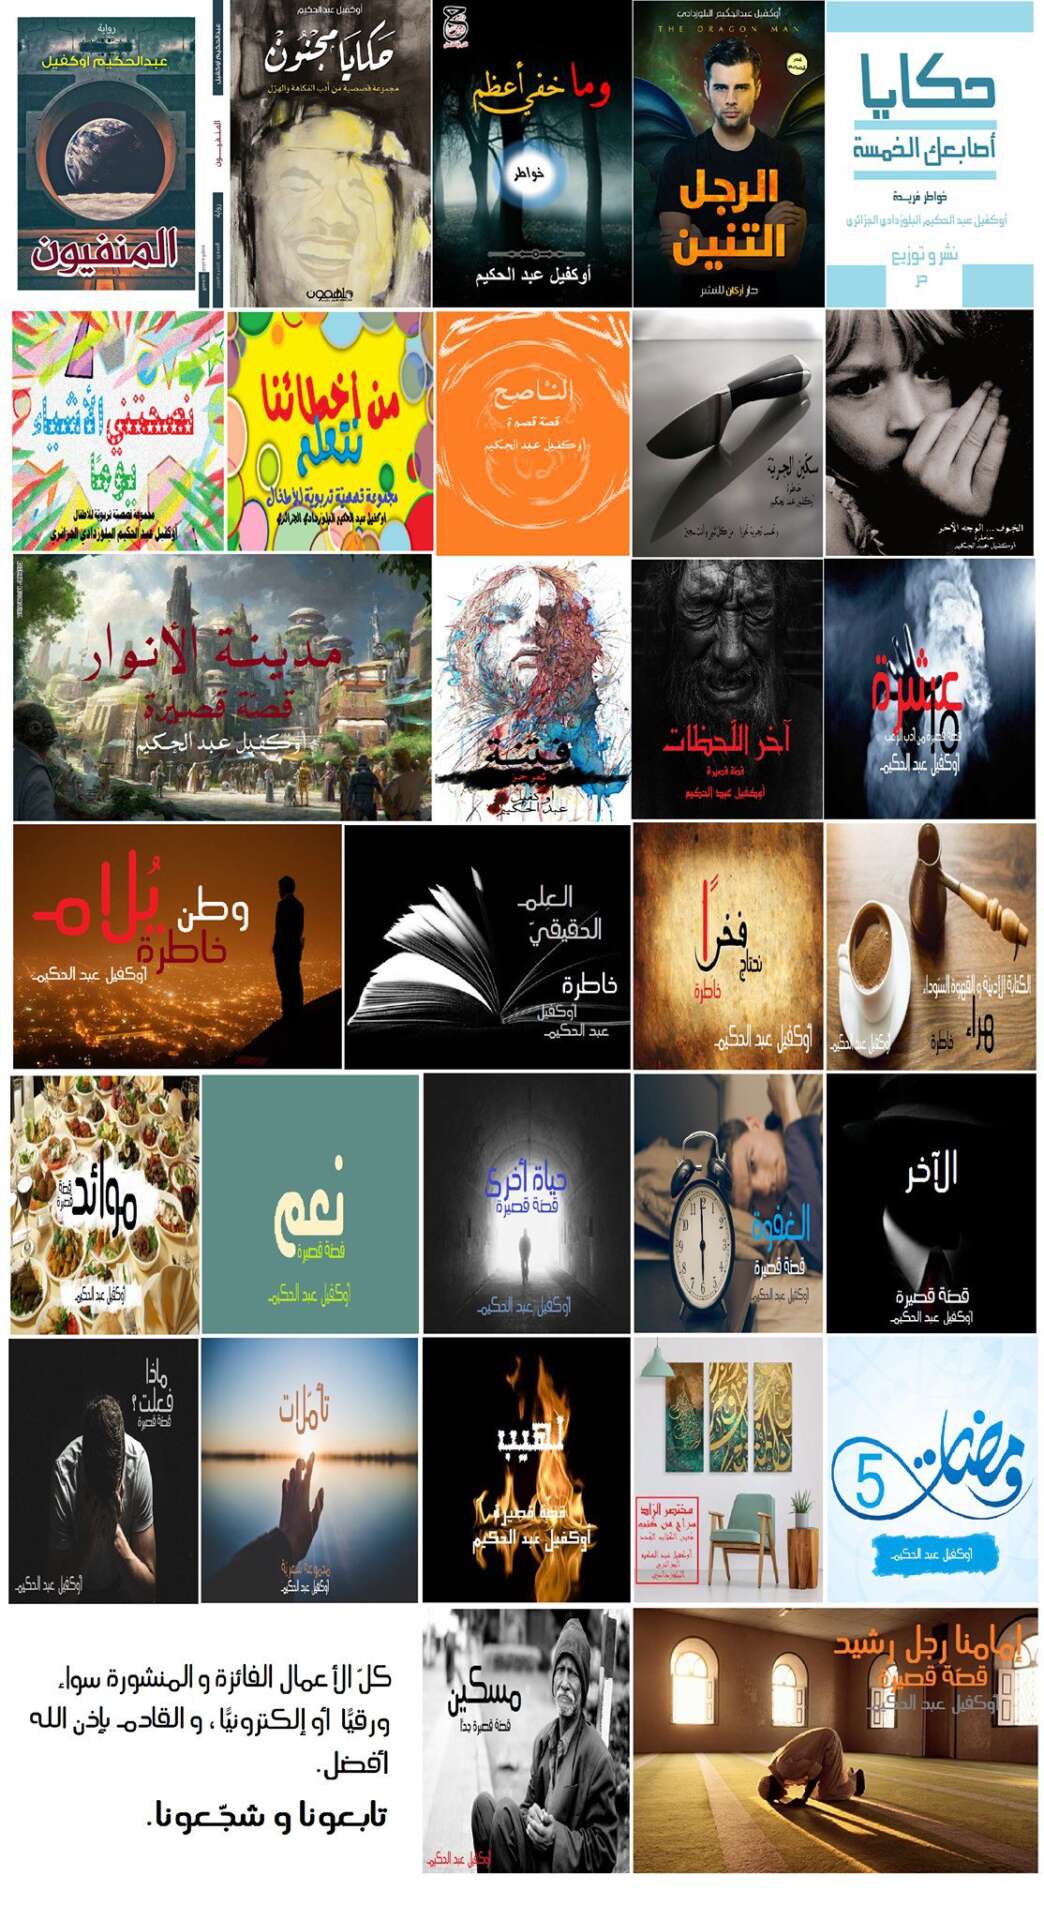 سير وناشرون - سيرة ذاتية وأدبية: أوكفيل عبد الحكيم - موقع (كيدزوون | Kidzooon)